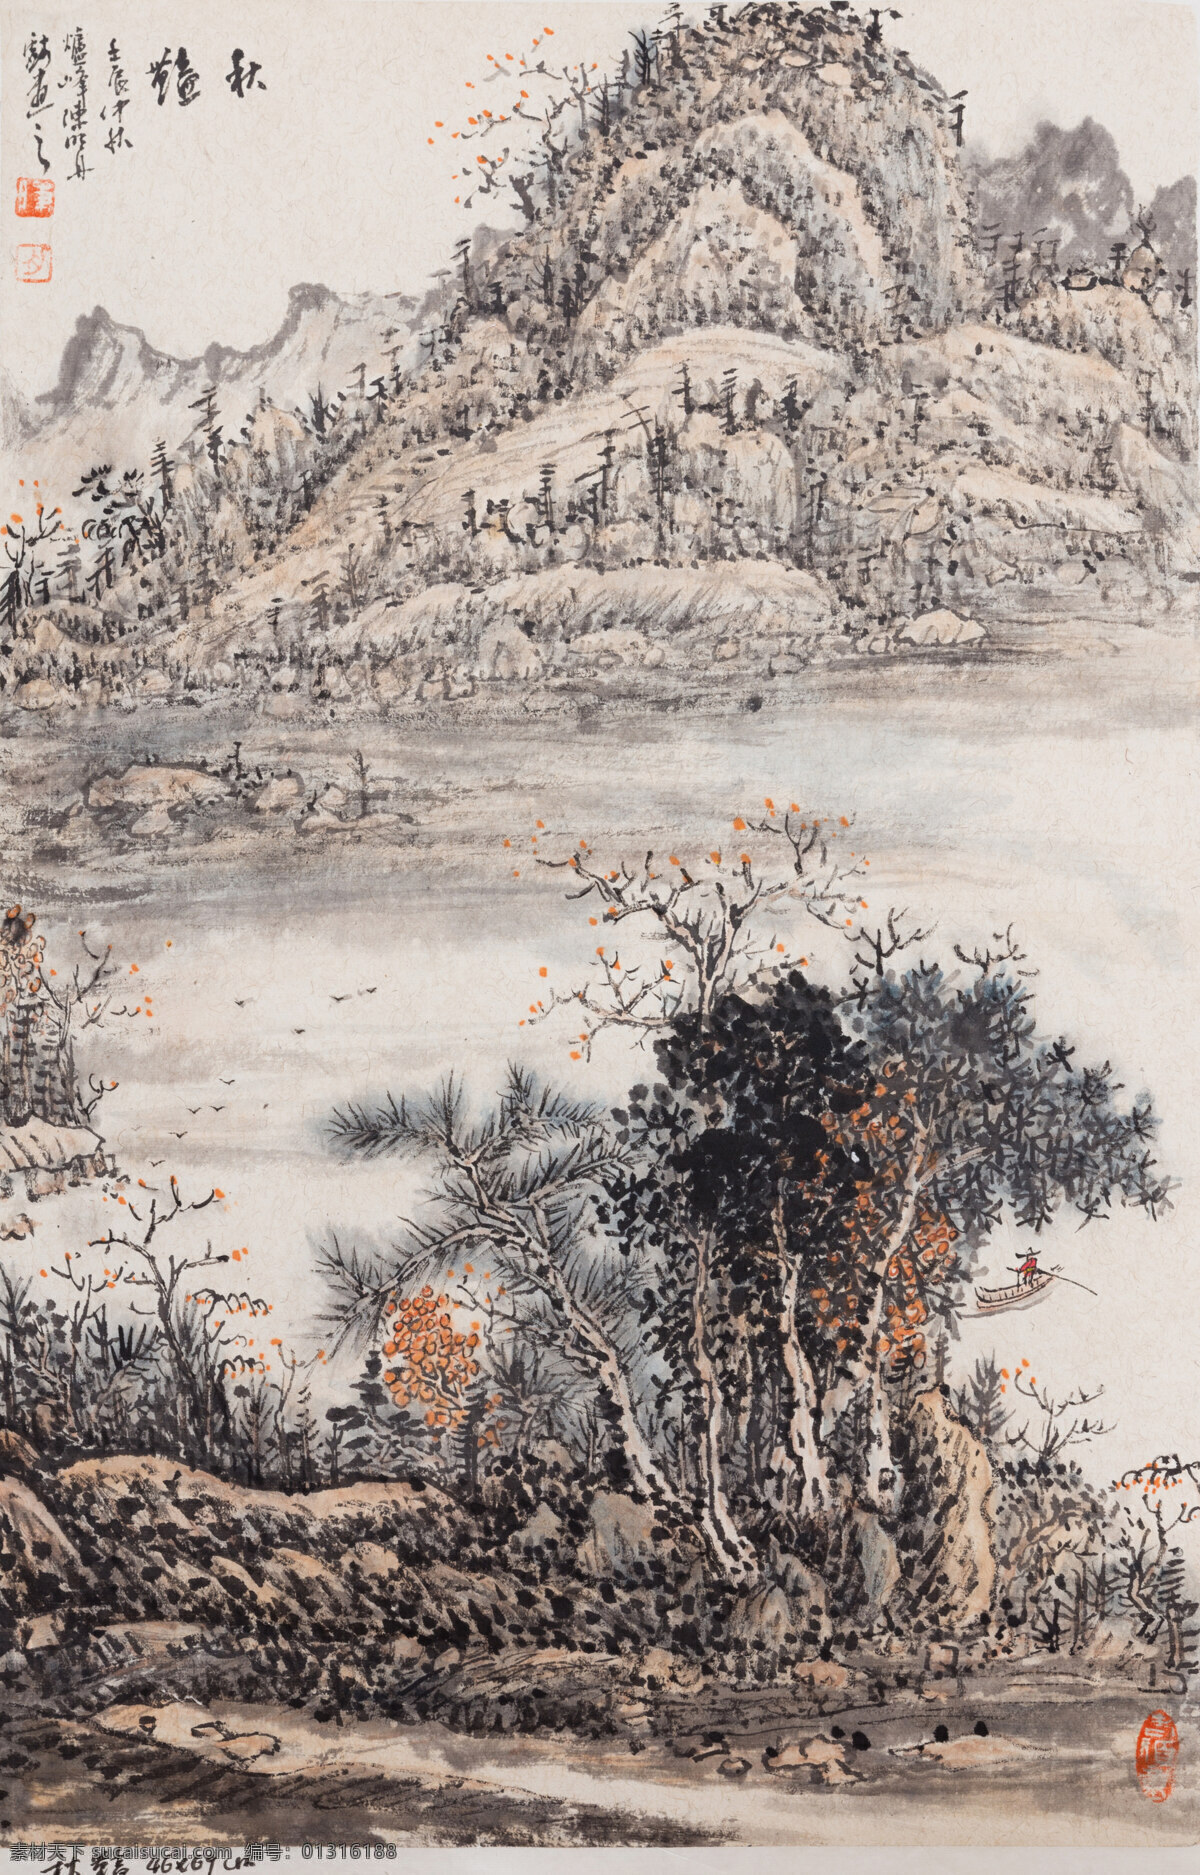 高山 绘画 书法 传统 绘画书法 山峰 树木 水墨画 文化艺术 中国 风景 生活 旅游餐饮